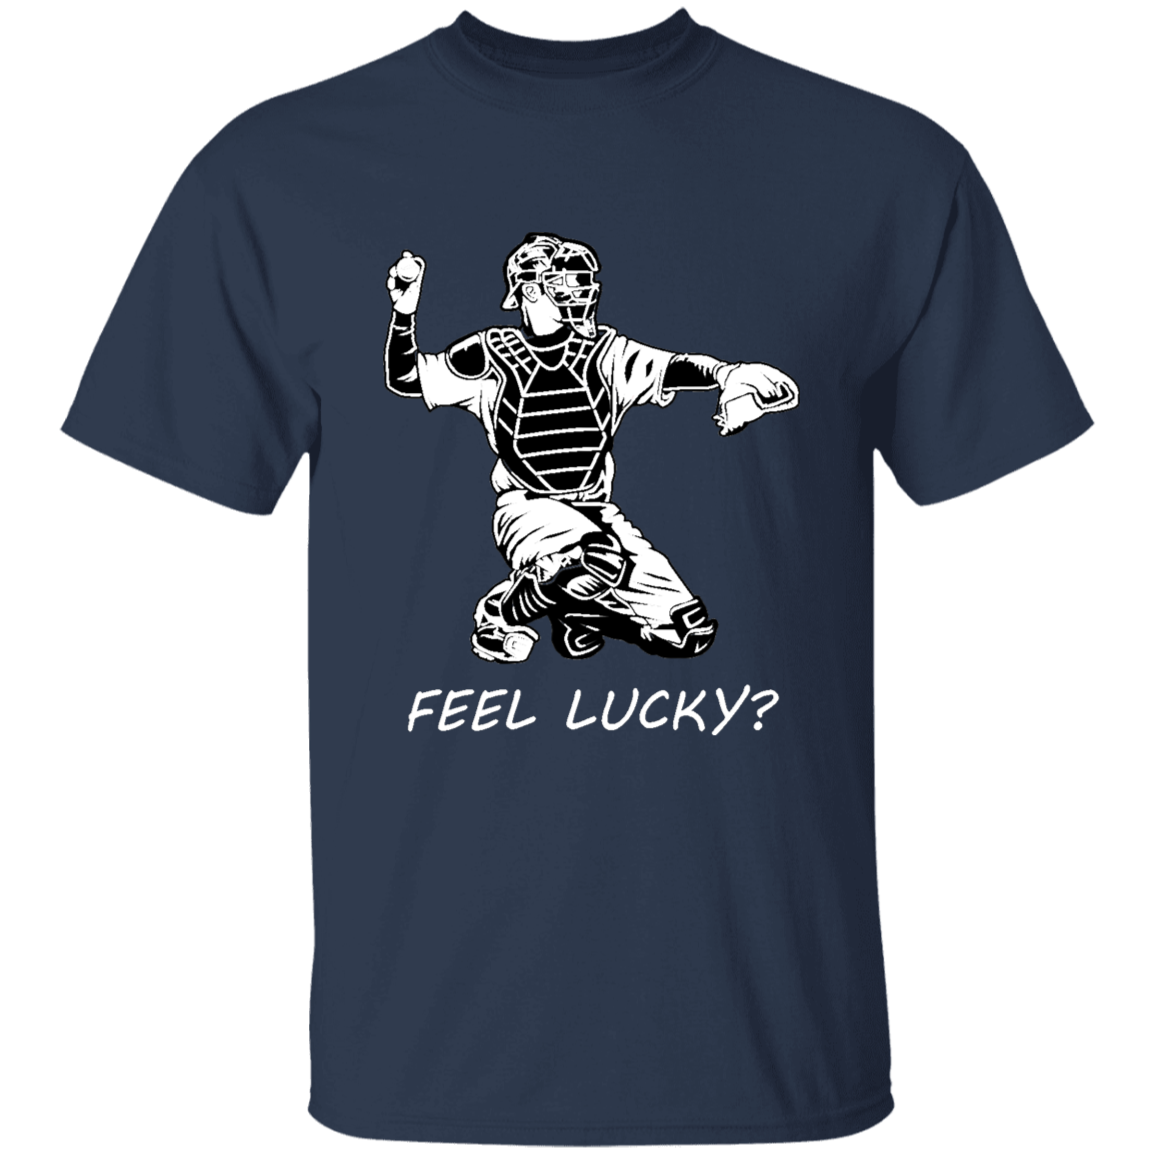 Baseball catcher - feel lucky  (w) - T-Shirt - youth